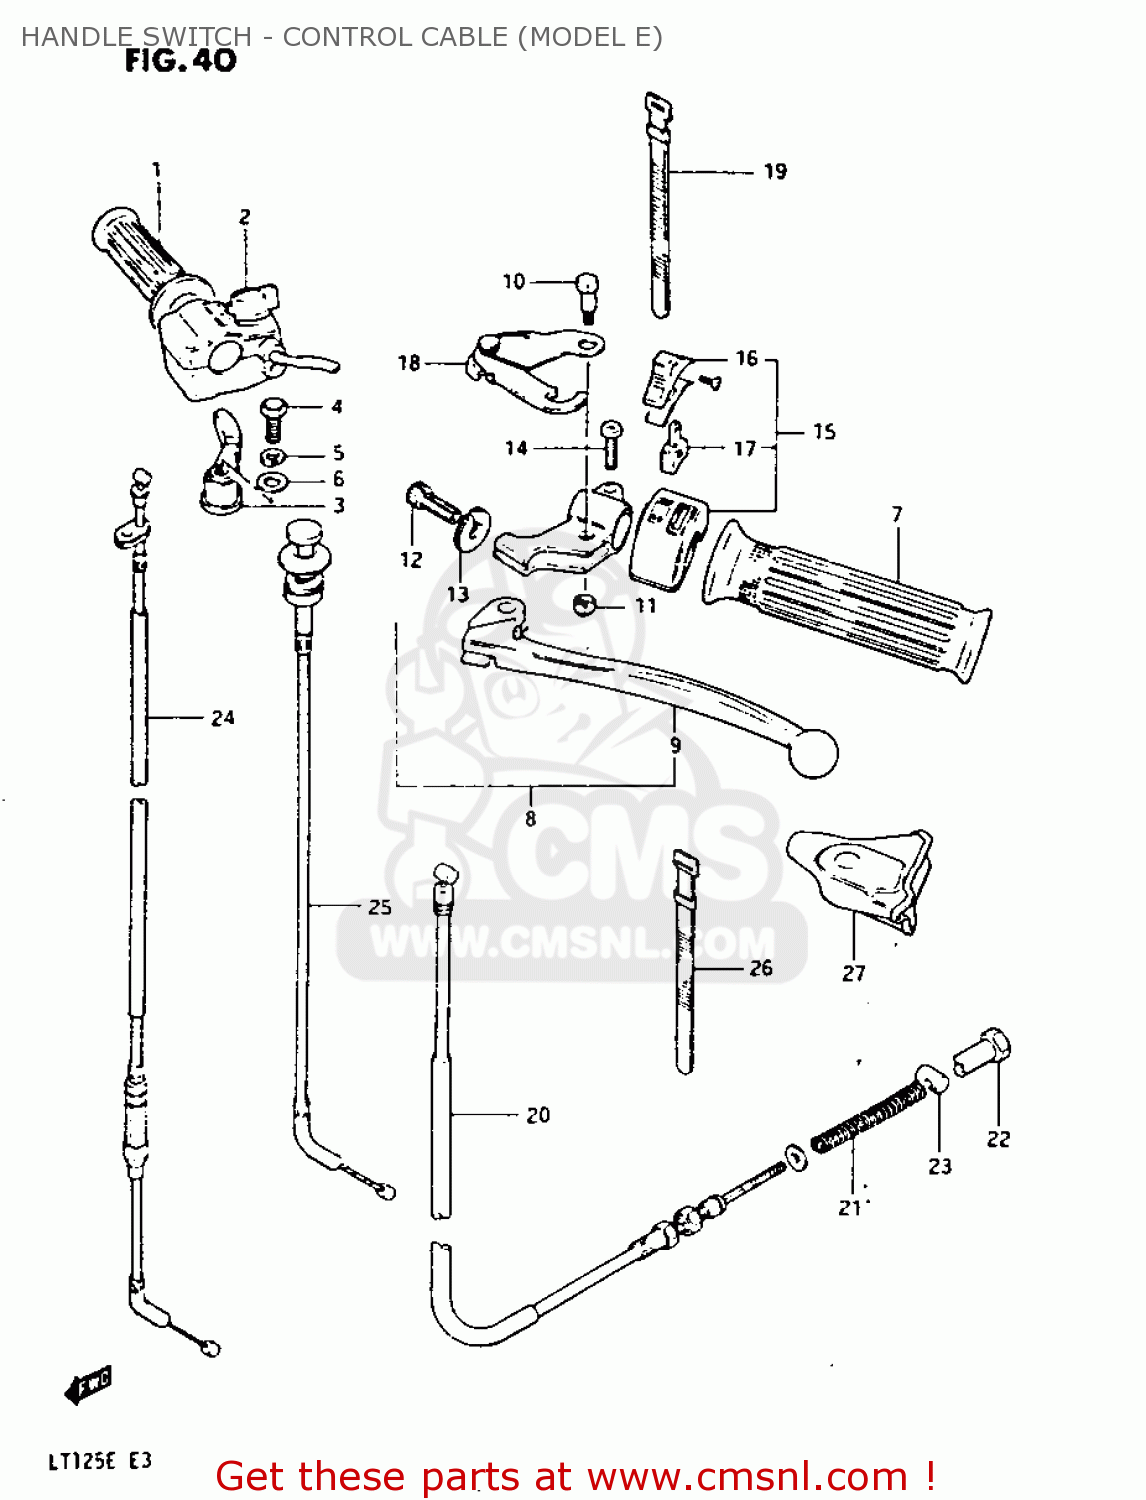 1983 suzuki sp125 wiring diagram